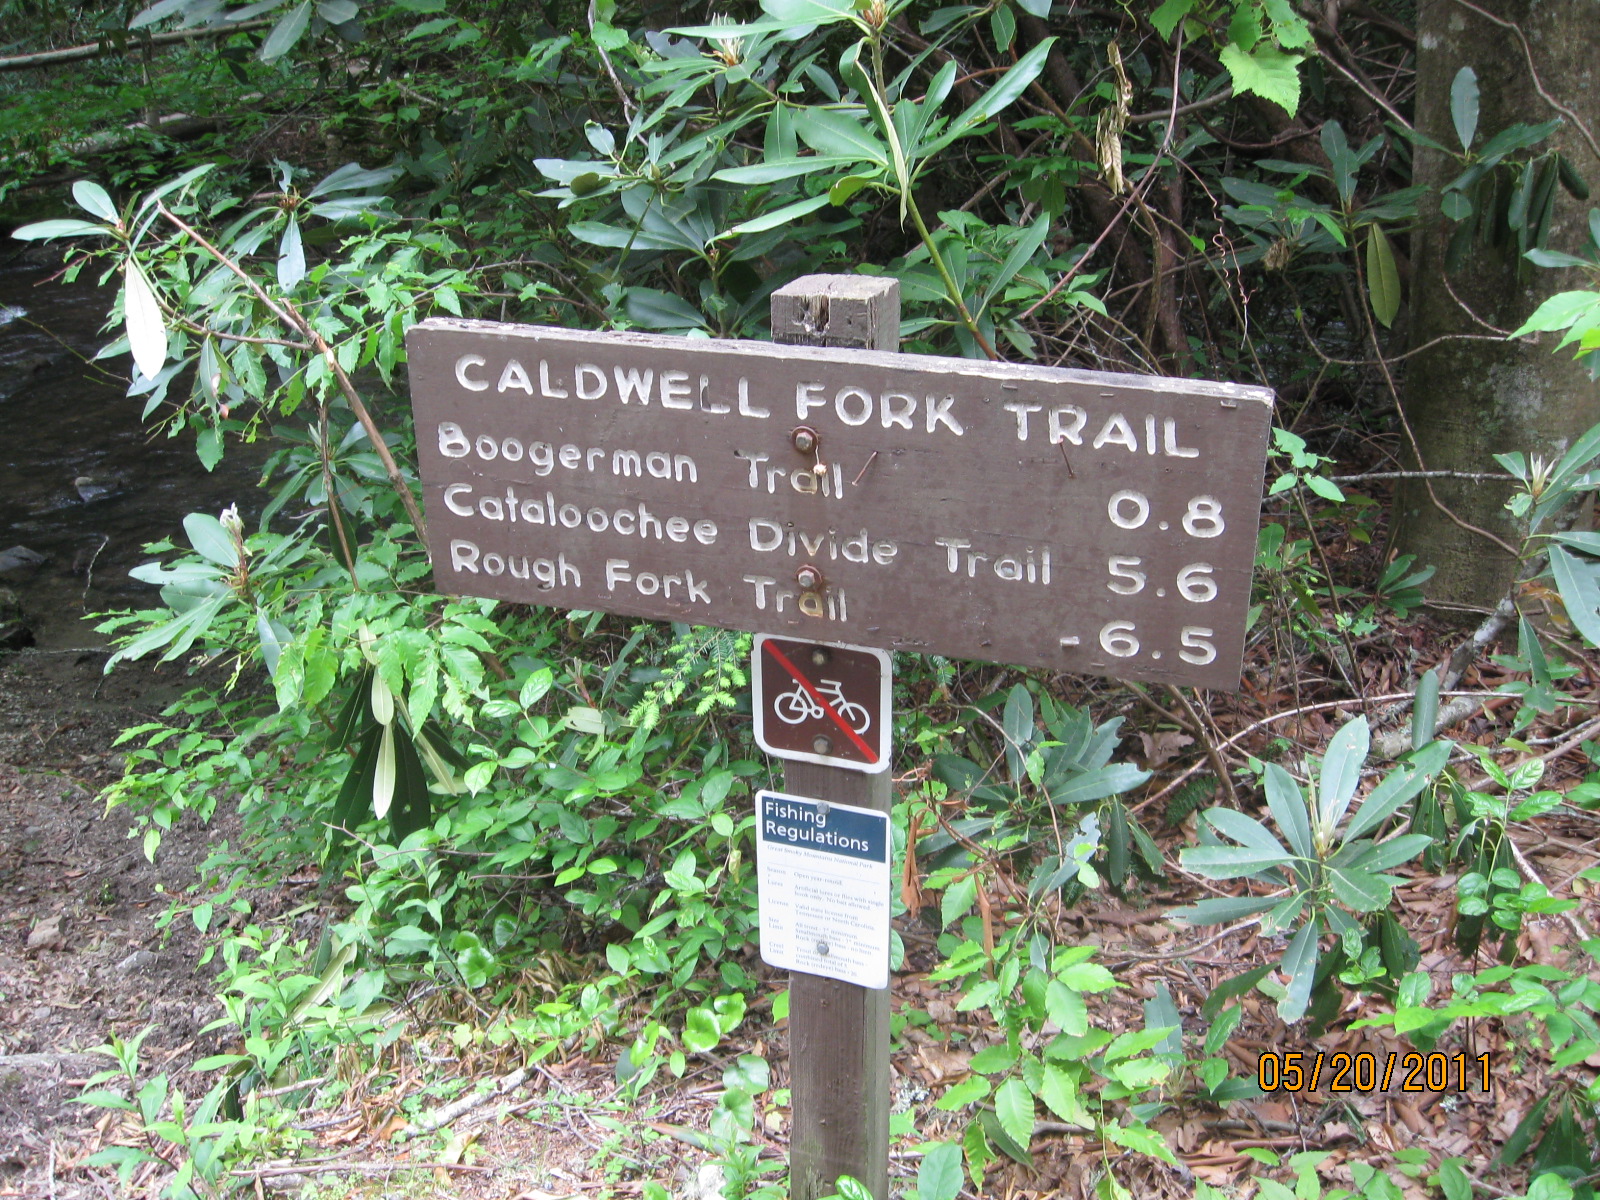 Caldwell Fork Trail trailhead